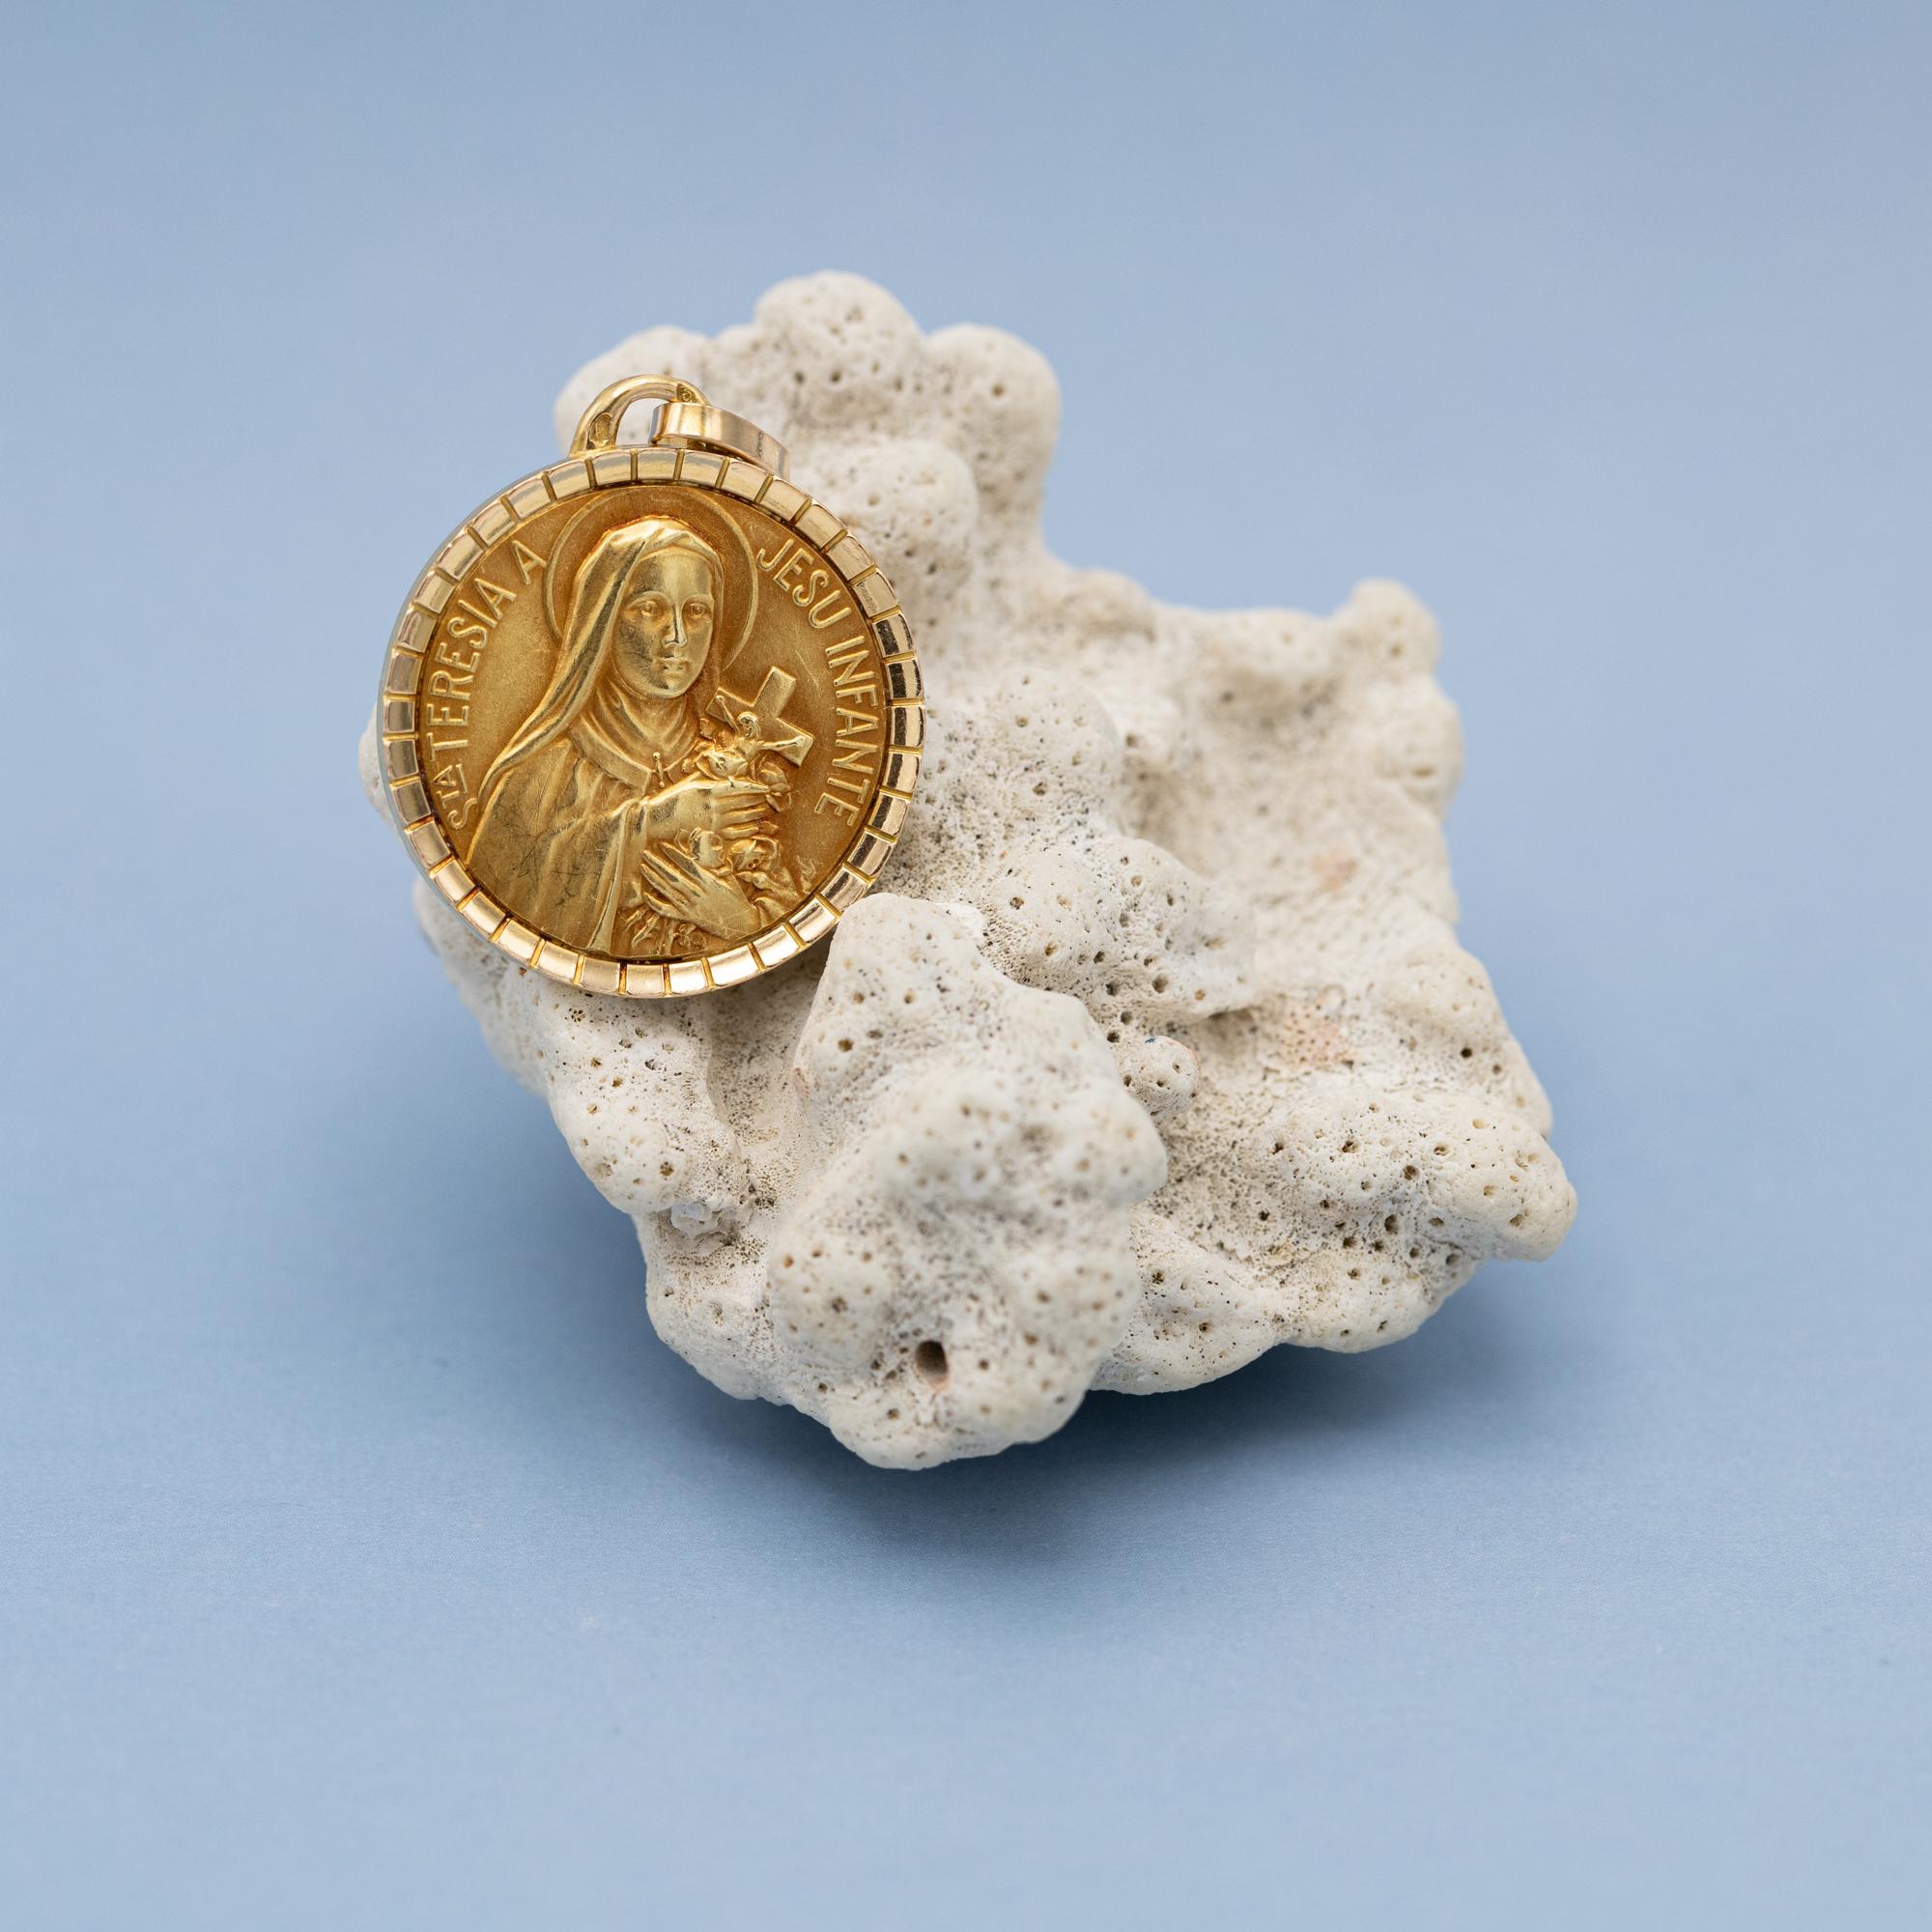 French 18k gold Saint Thérèse charm - Large Therese pendant - Sancta Teresia  1